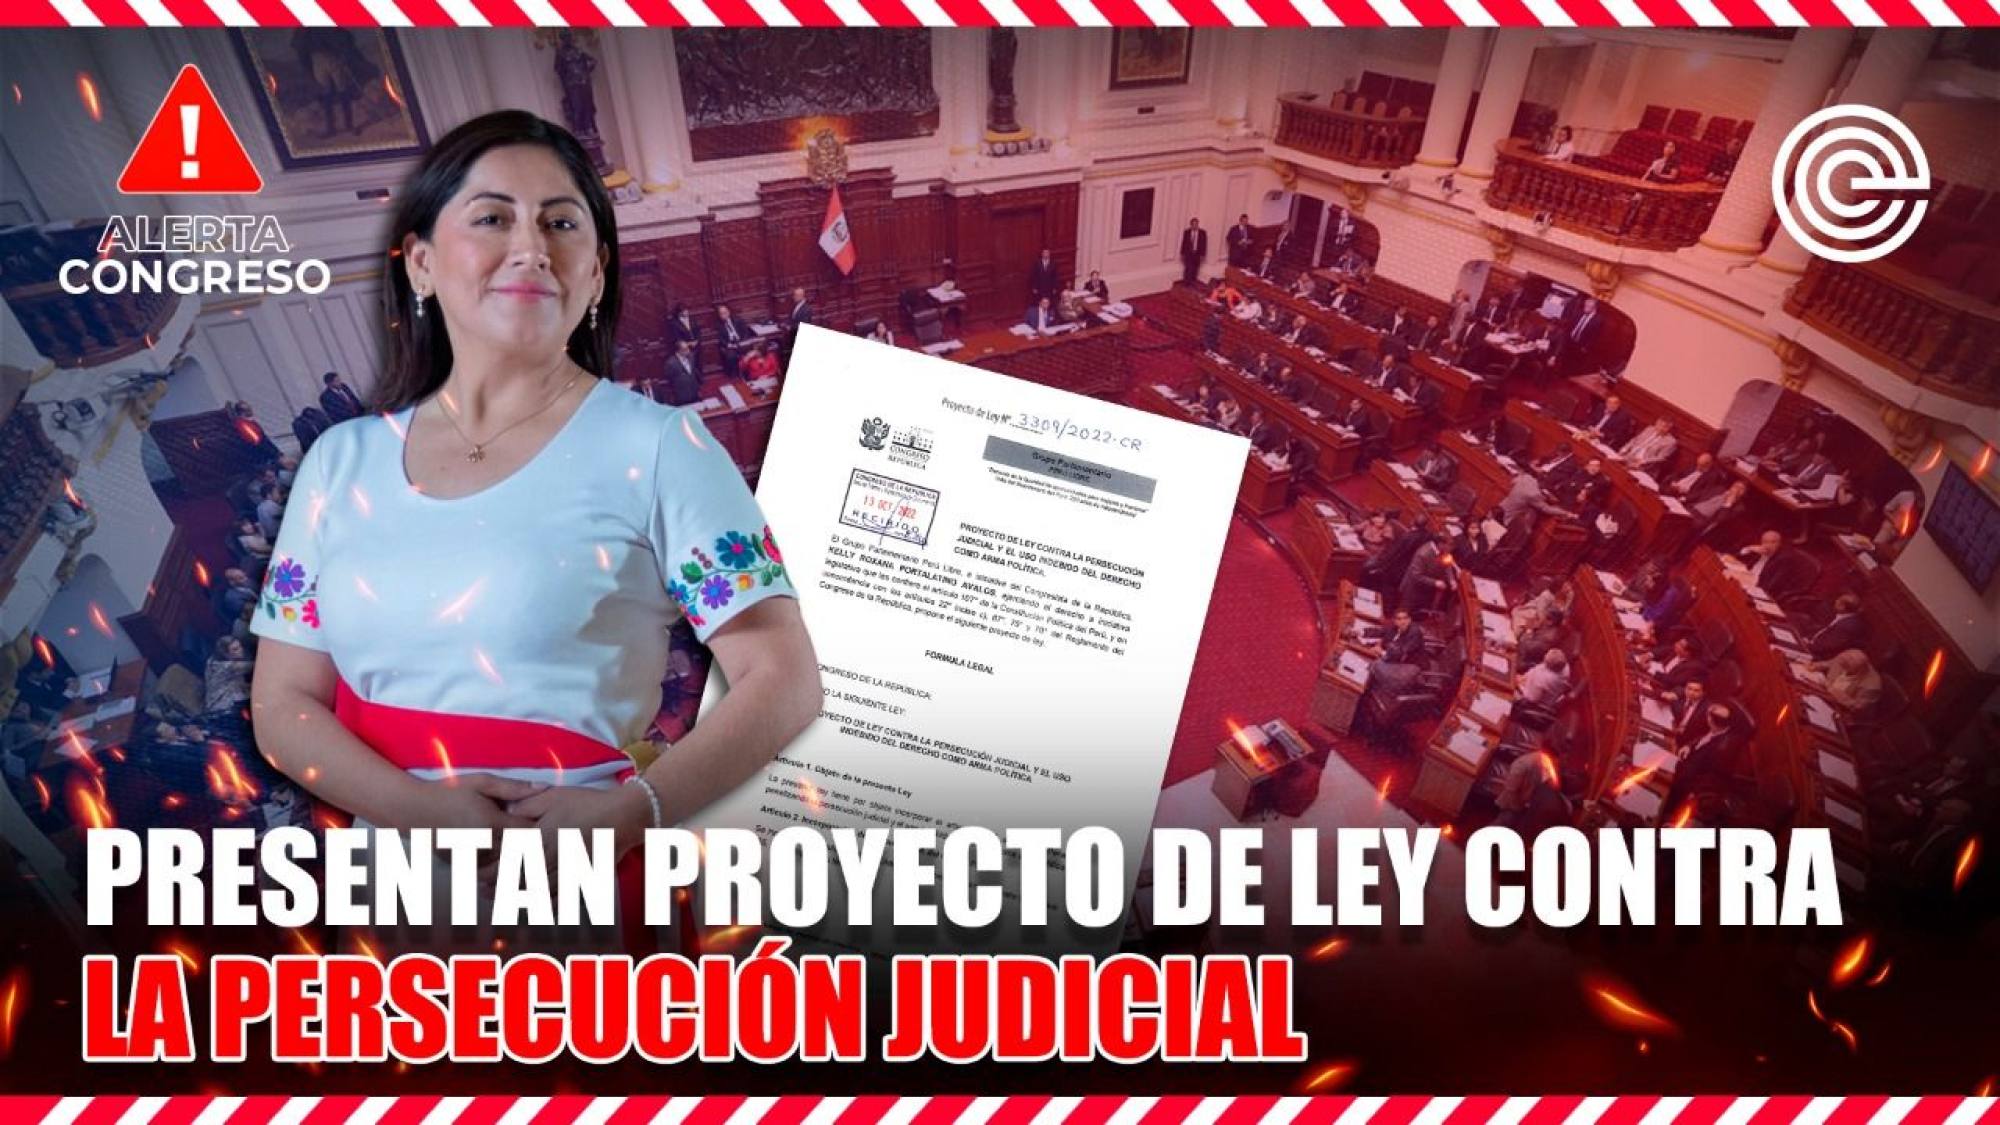 Alerta Congreso | Presentan proyecto de ley contra la persecución judicial, Epicentro TV